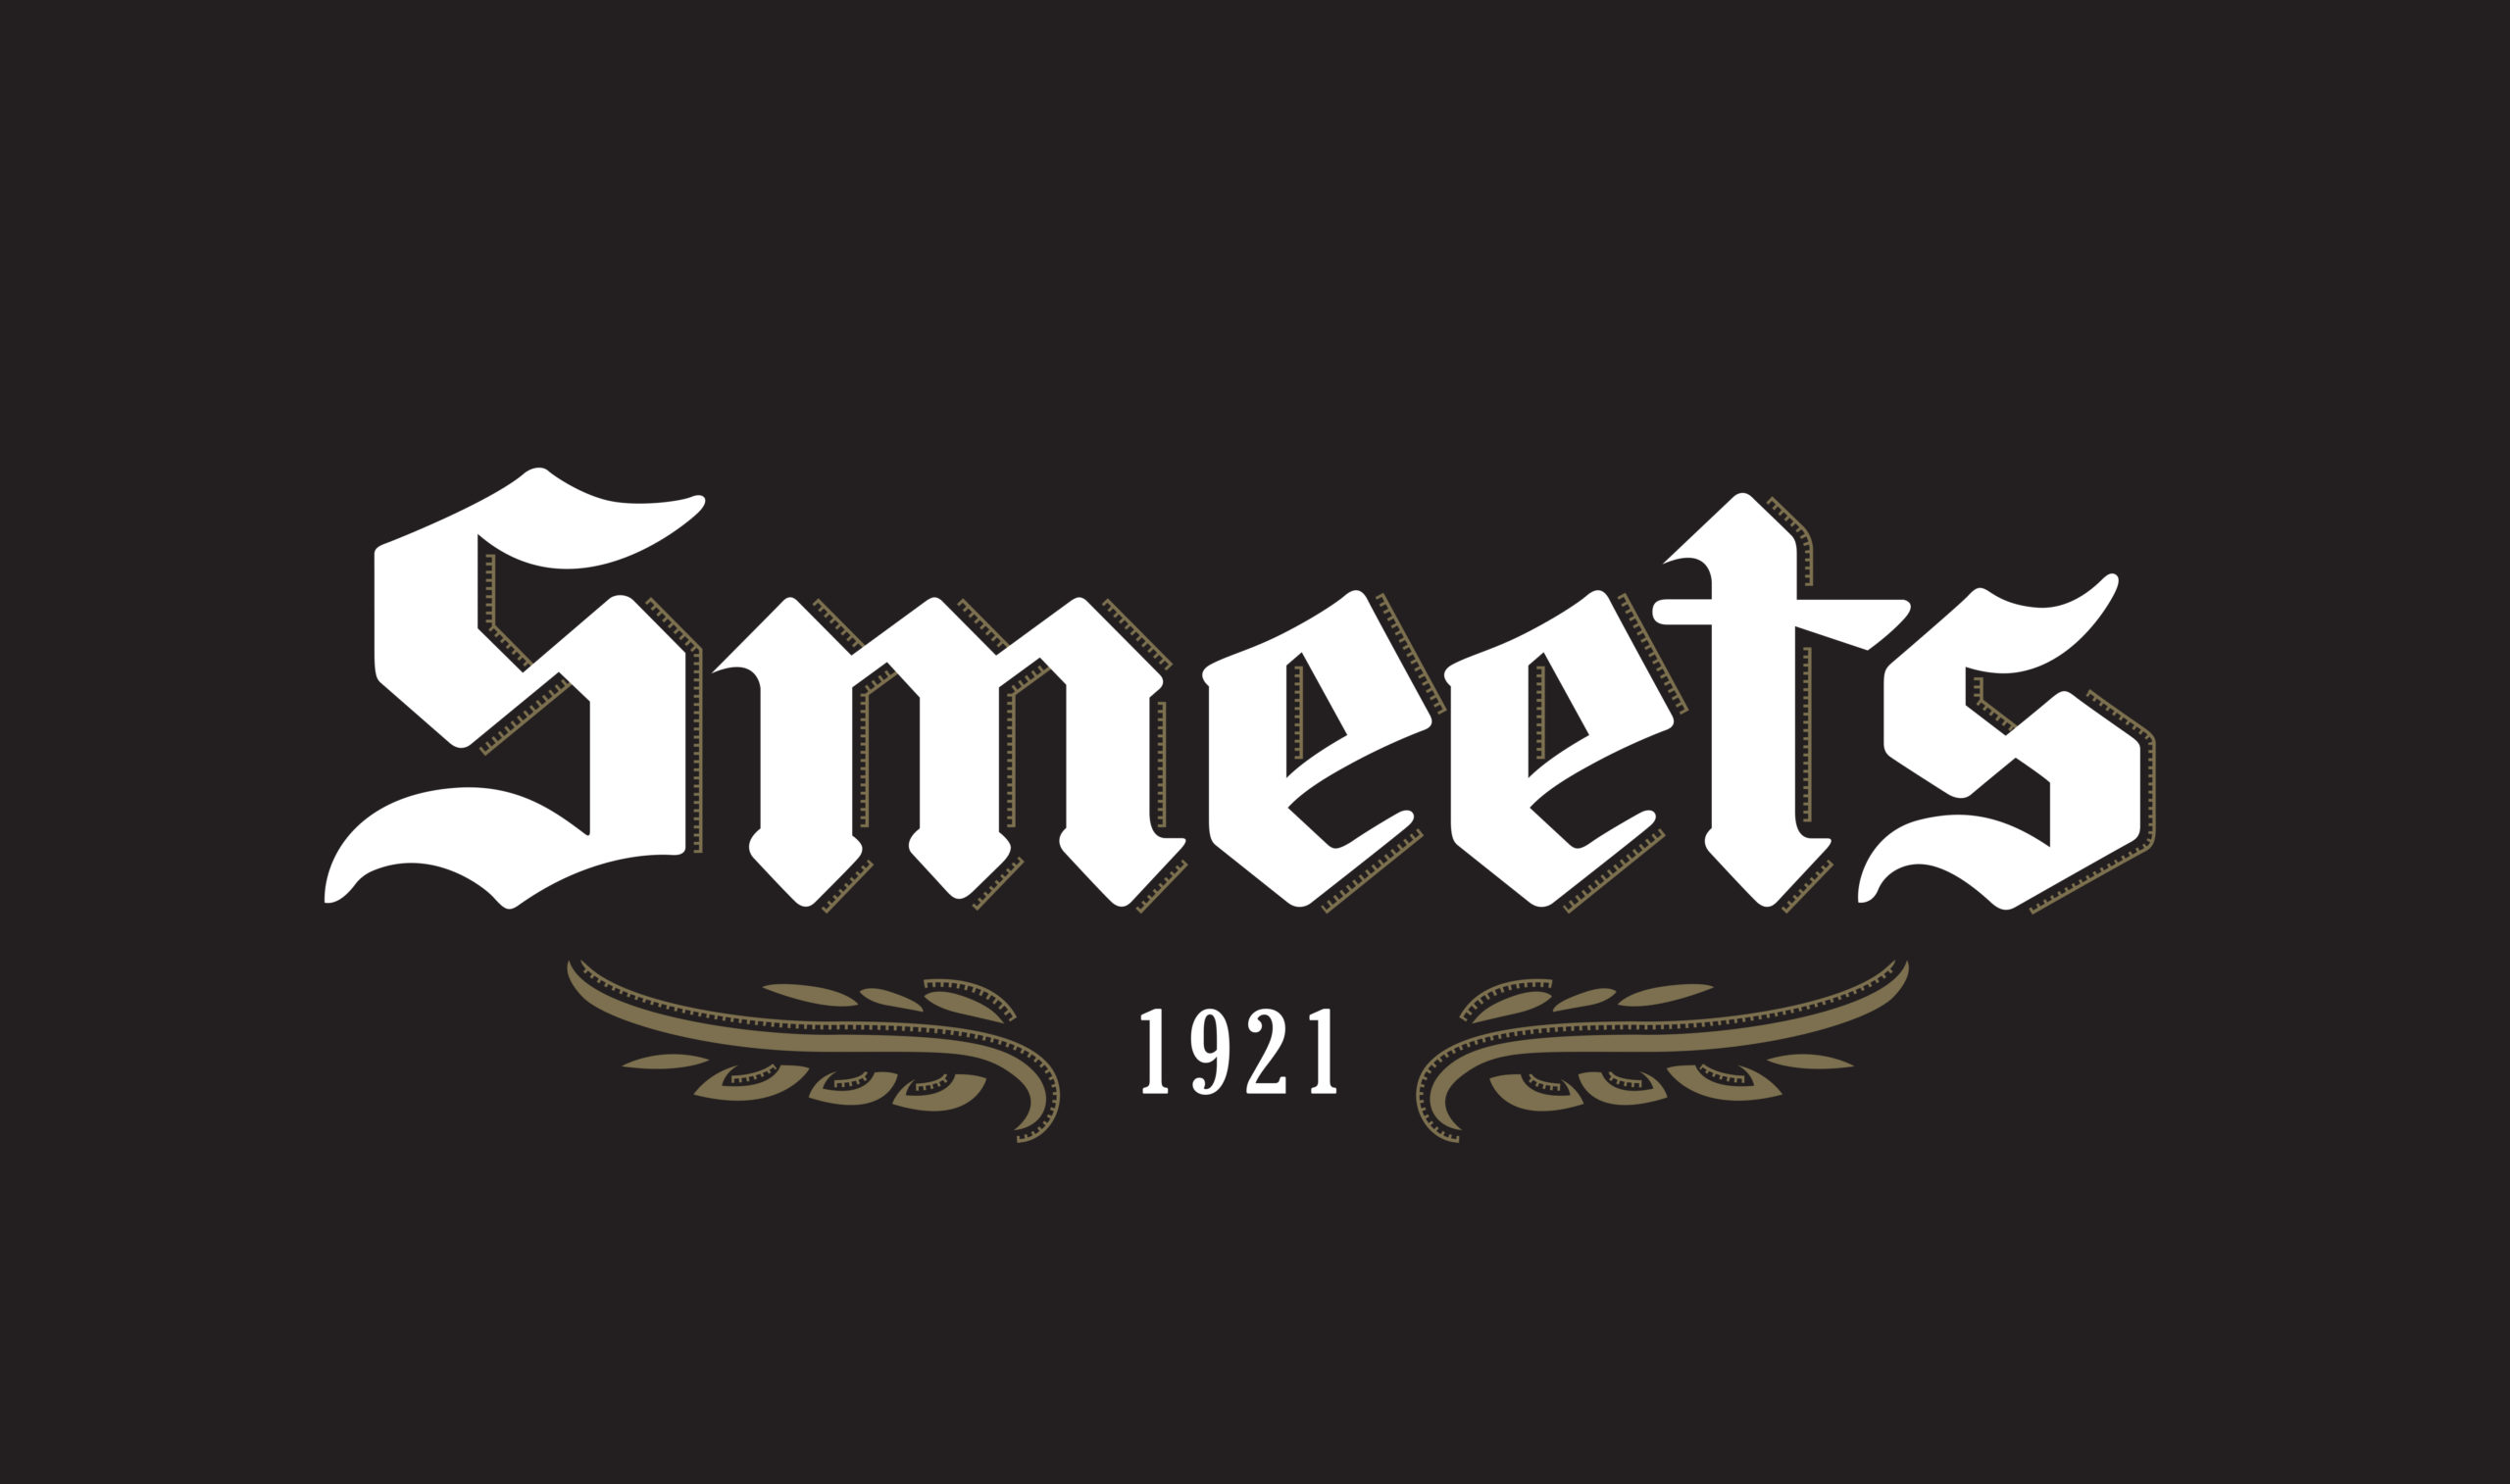 Logo Smeets